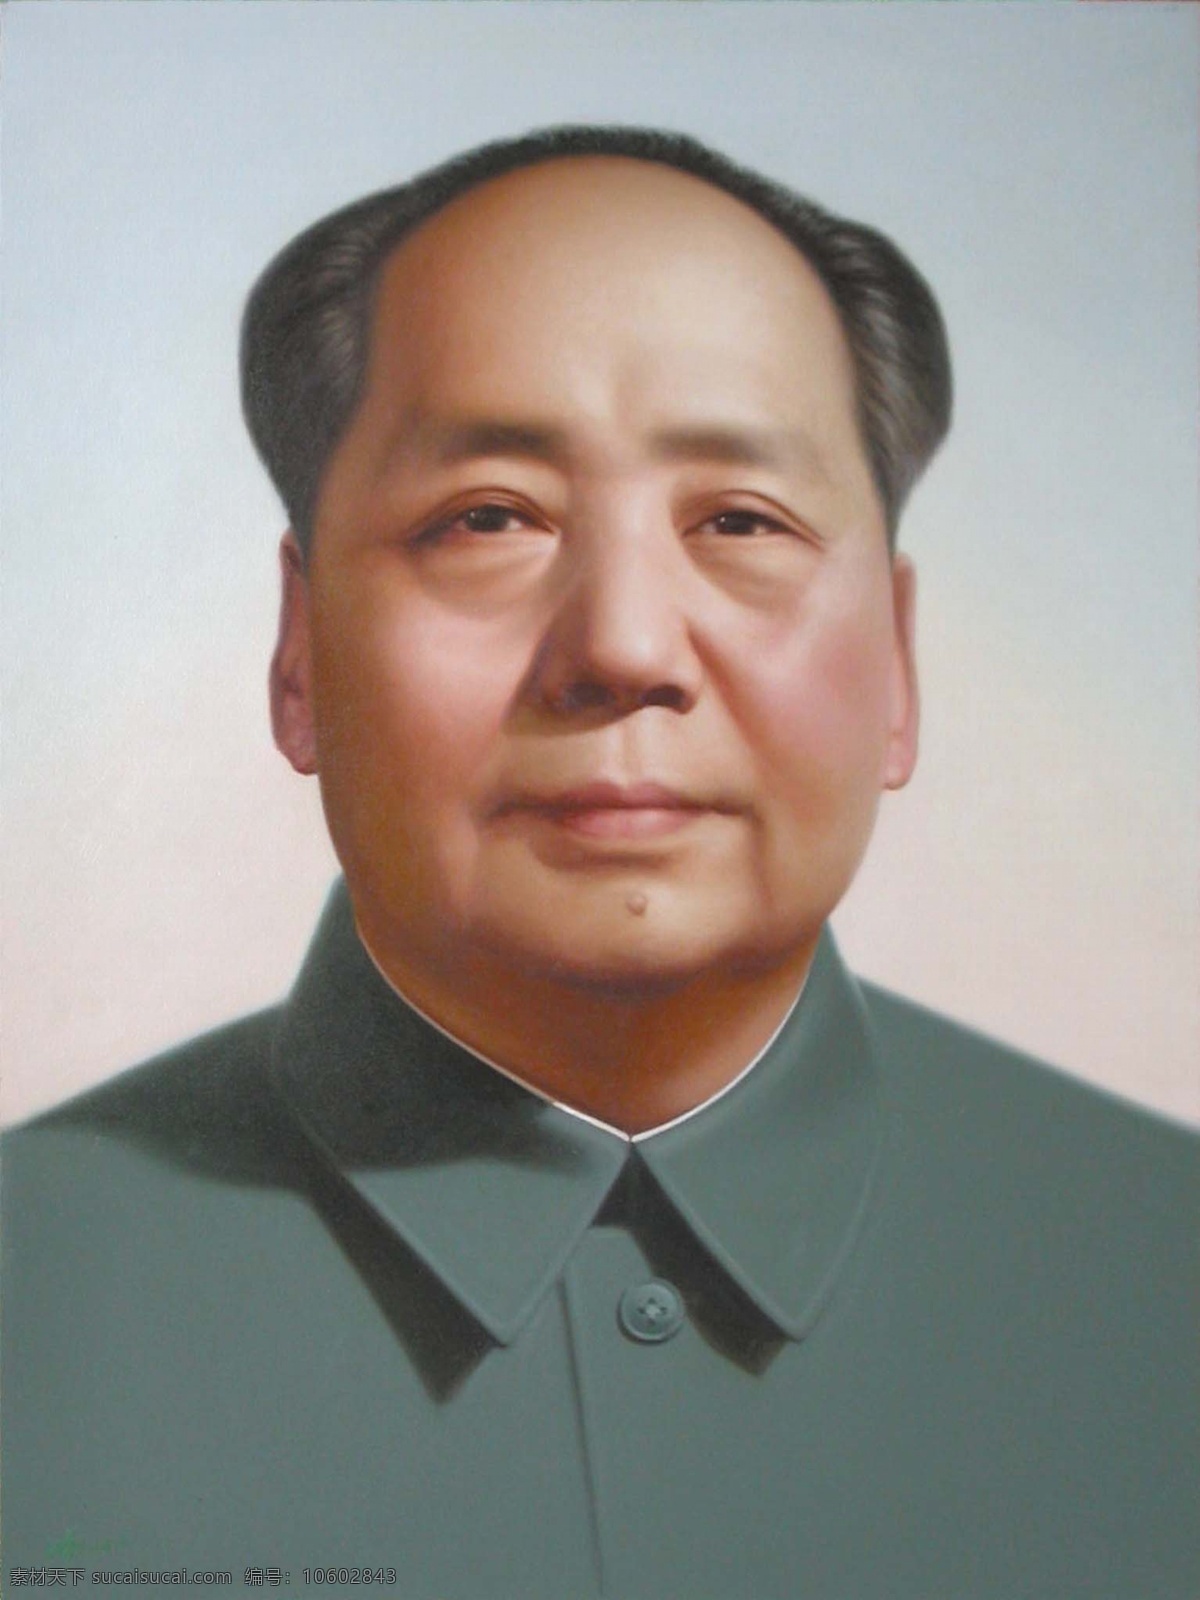 伟大 领袖 毛 主席 领袖画像 毛主席 毛泽东画像 人物图库 其他人物 摄影图库 300